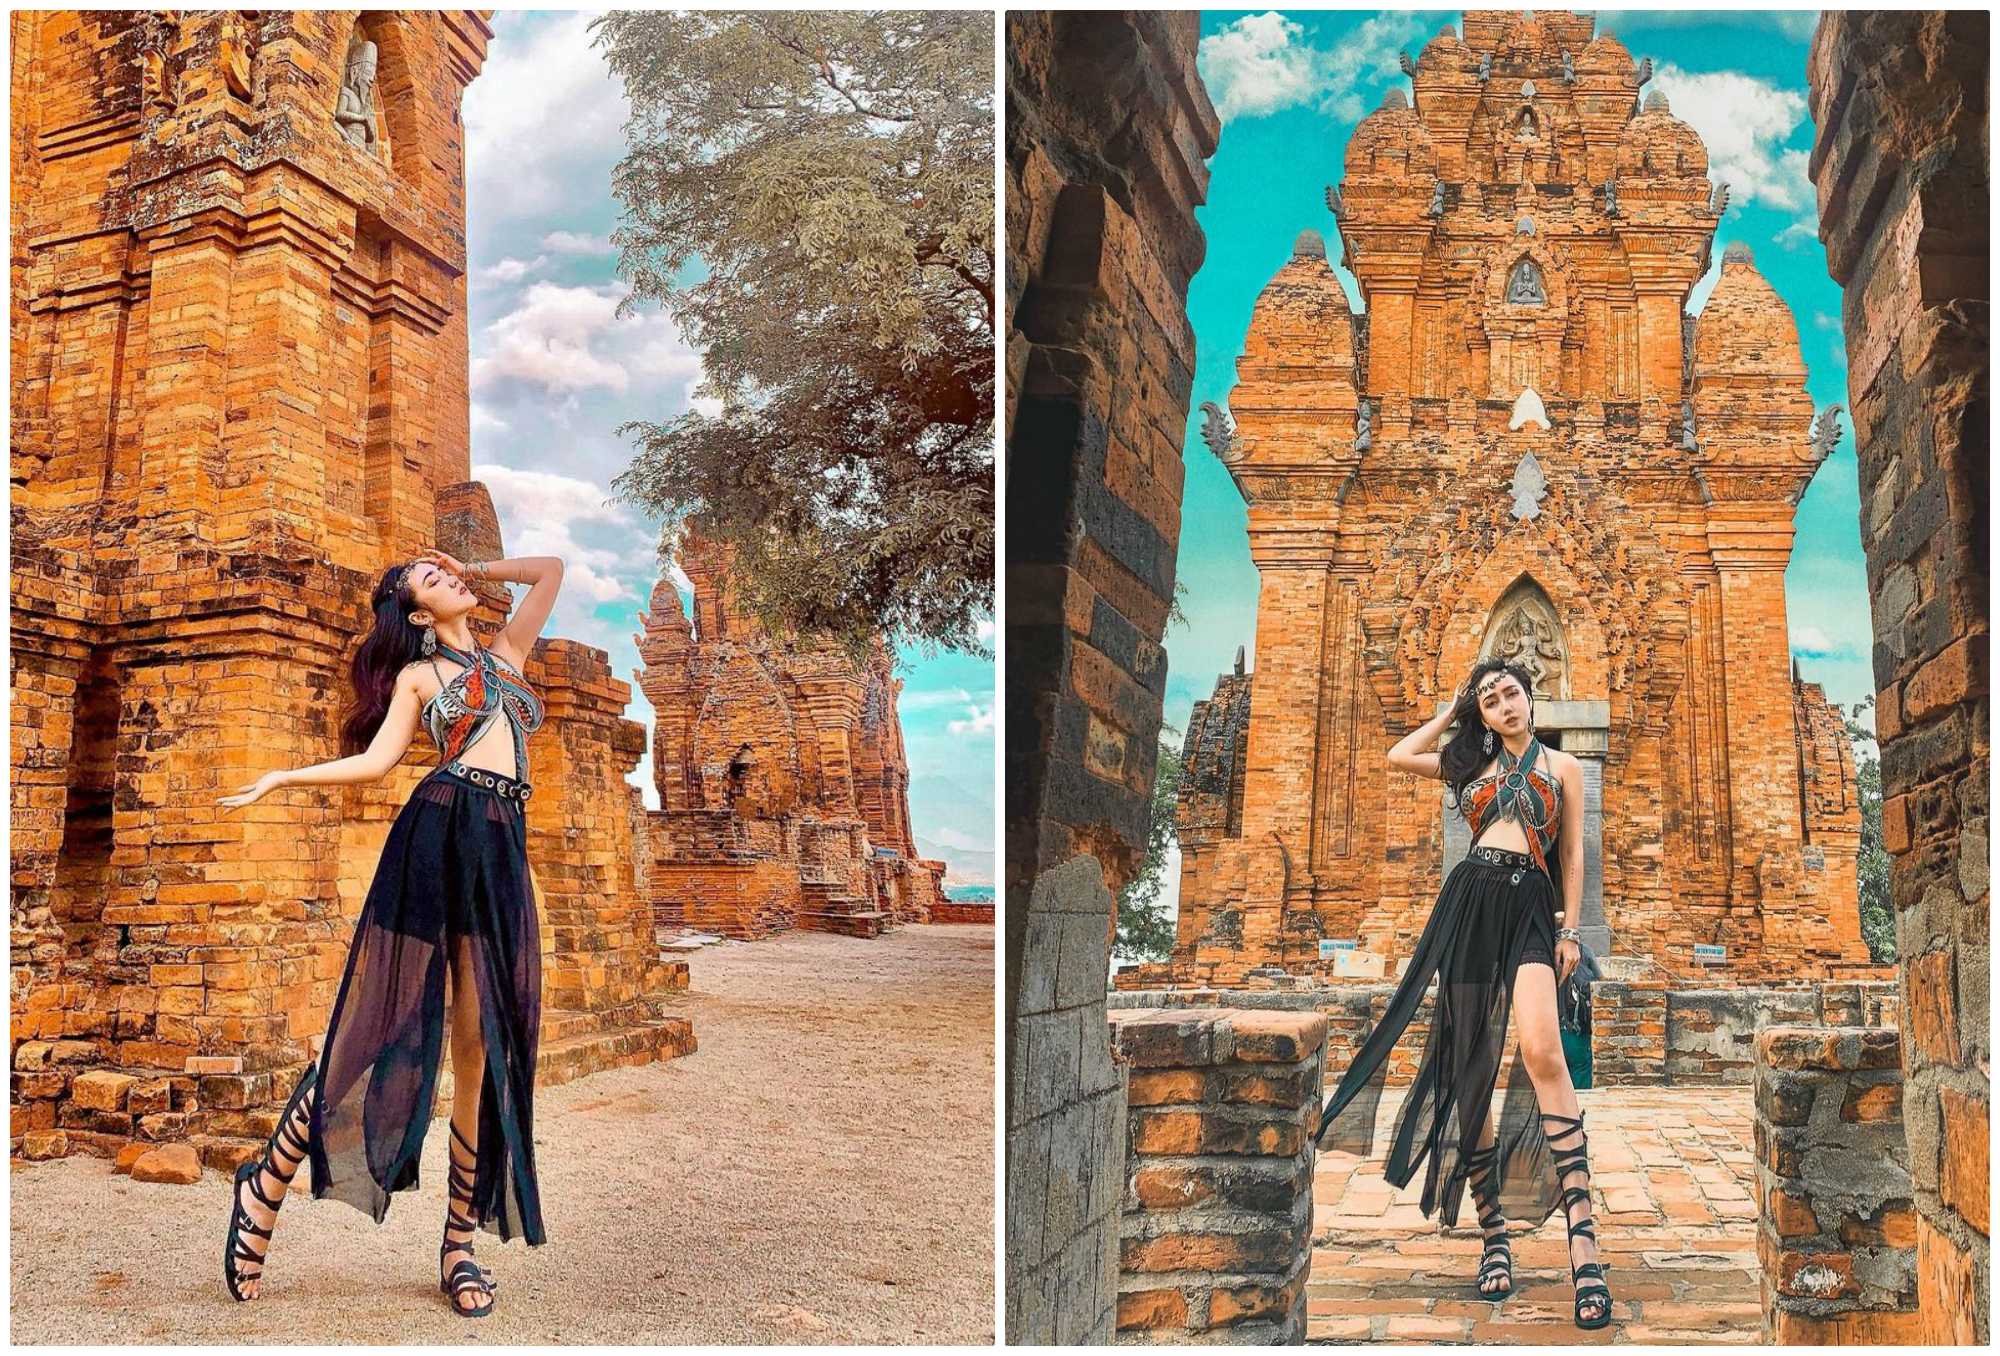 Không chỉ thu hút với kiến trúc độc đáo,cảnh quan quanh tháp Po Klong Garai cũng nổi bật không kém.